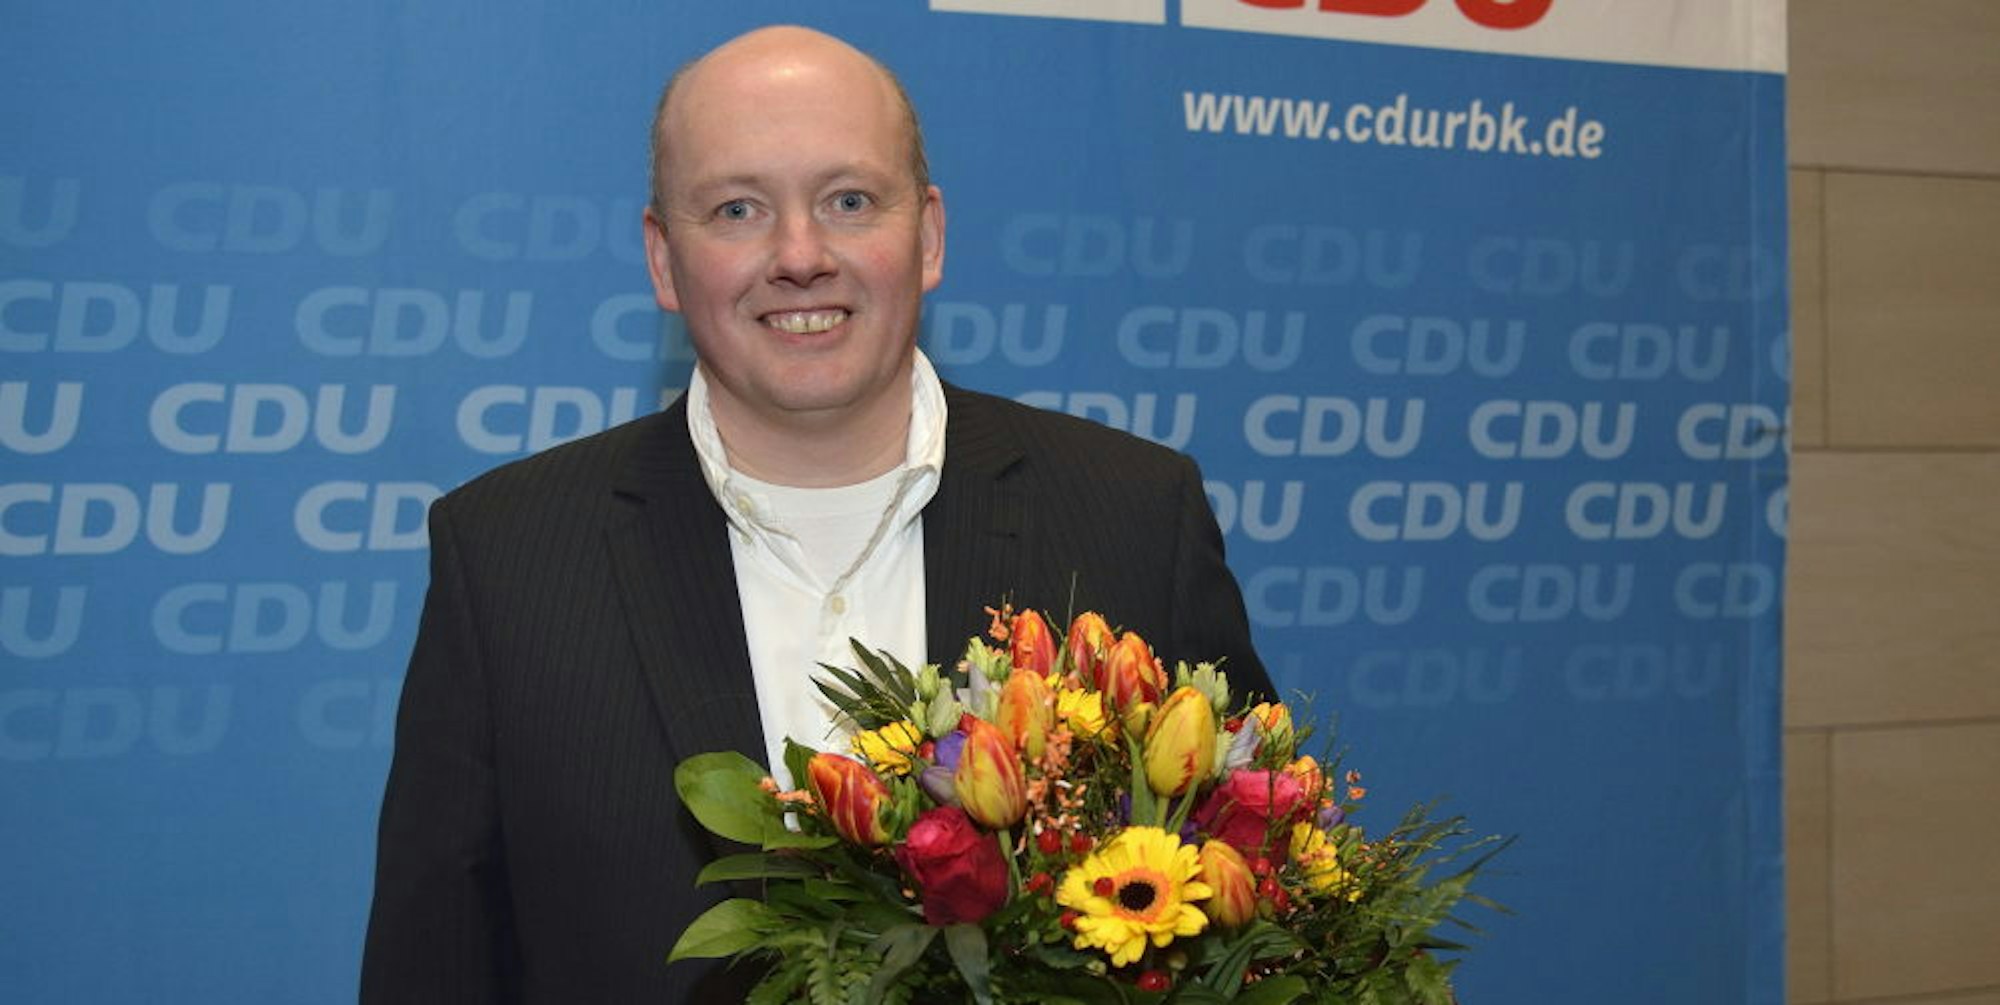 Marc Beer ist der CDU-Bürgermeisterkandidat in Kürten.